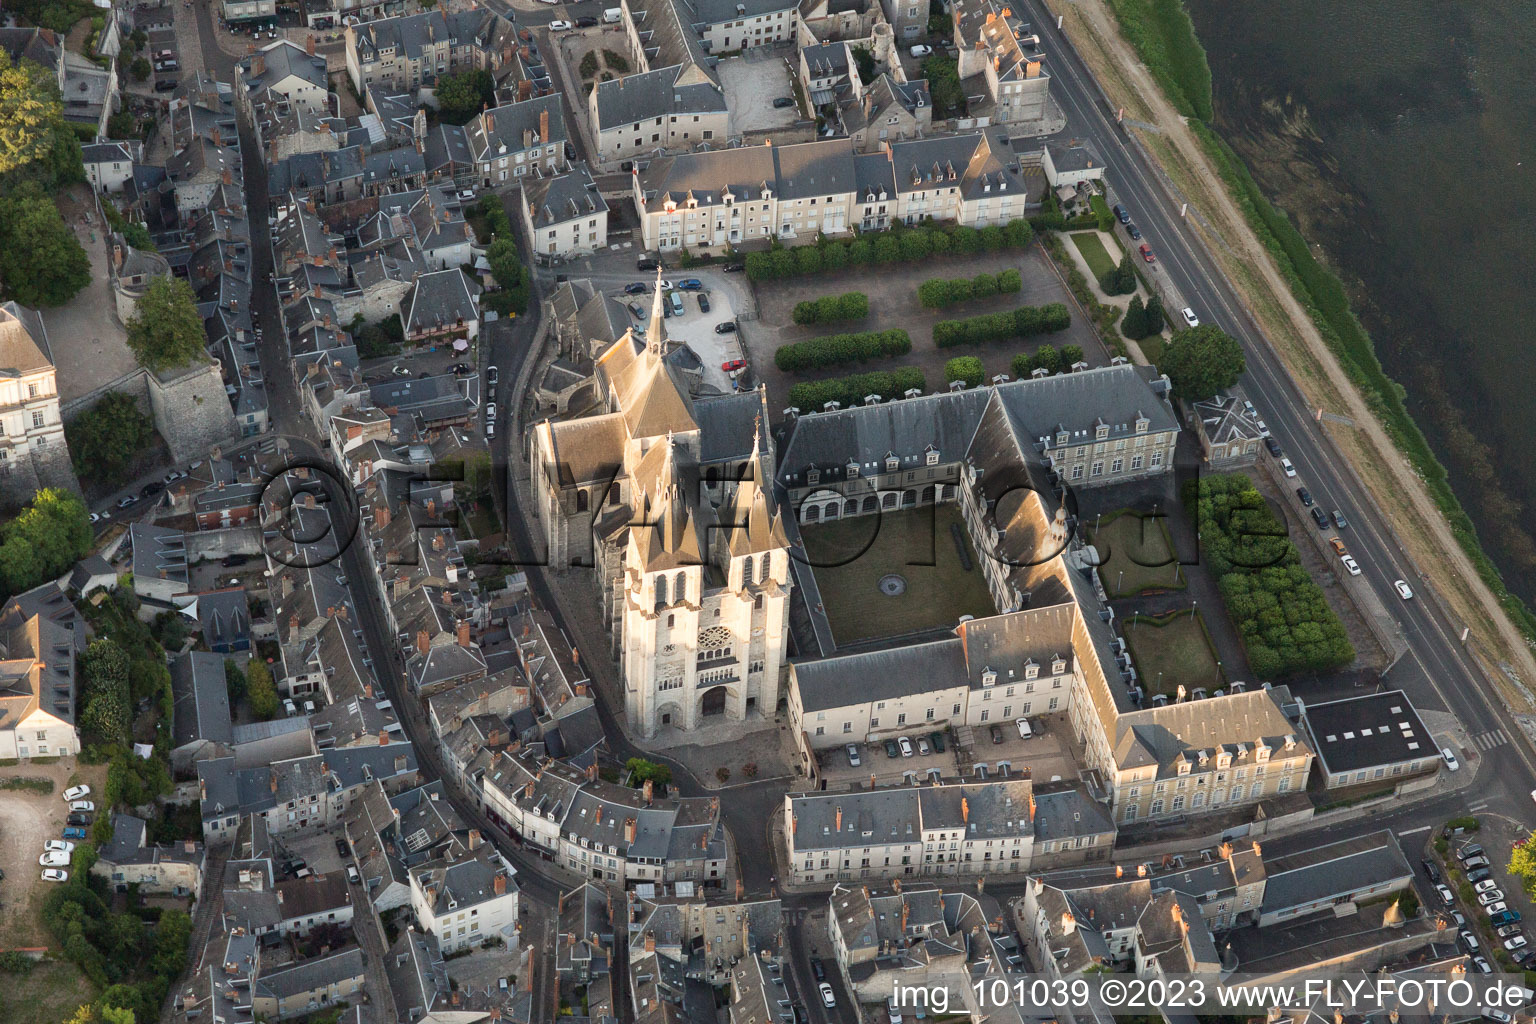 Blois im Bundesland Loir-et-Cher, Frankreich aus der Luft betrachtet